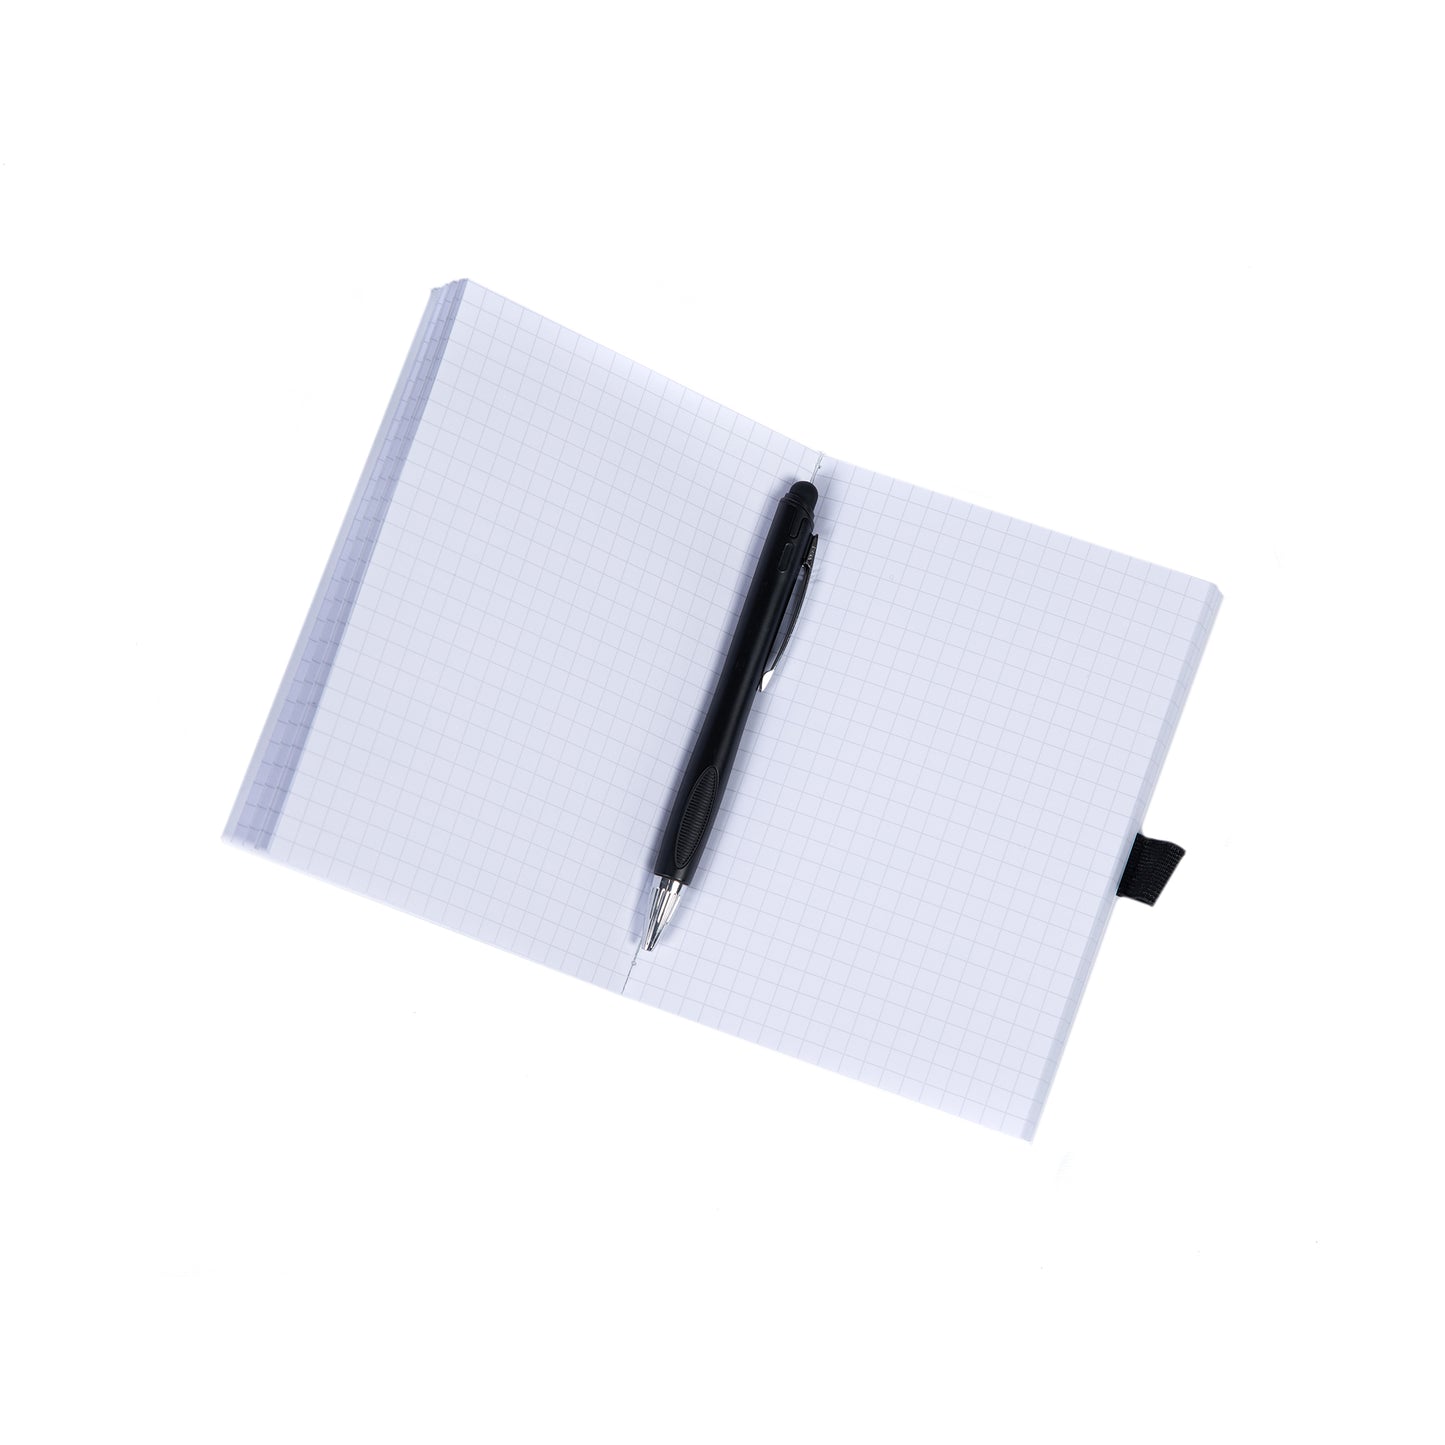 Midmark Branded Gridded Notepad